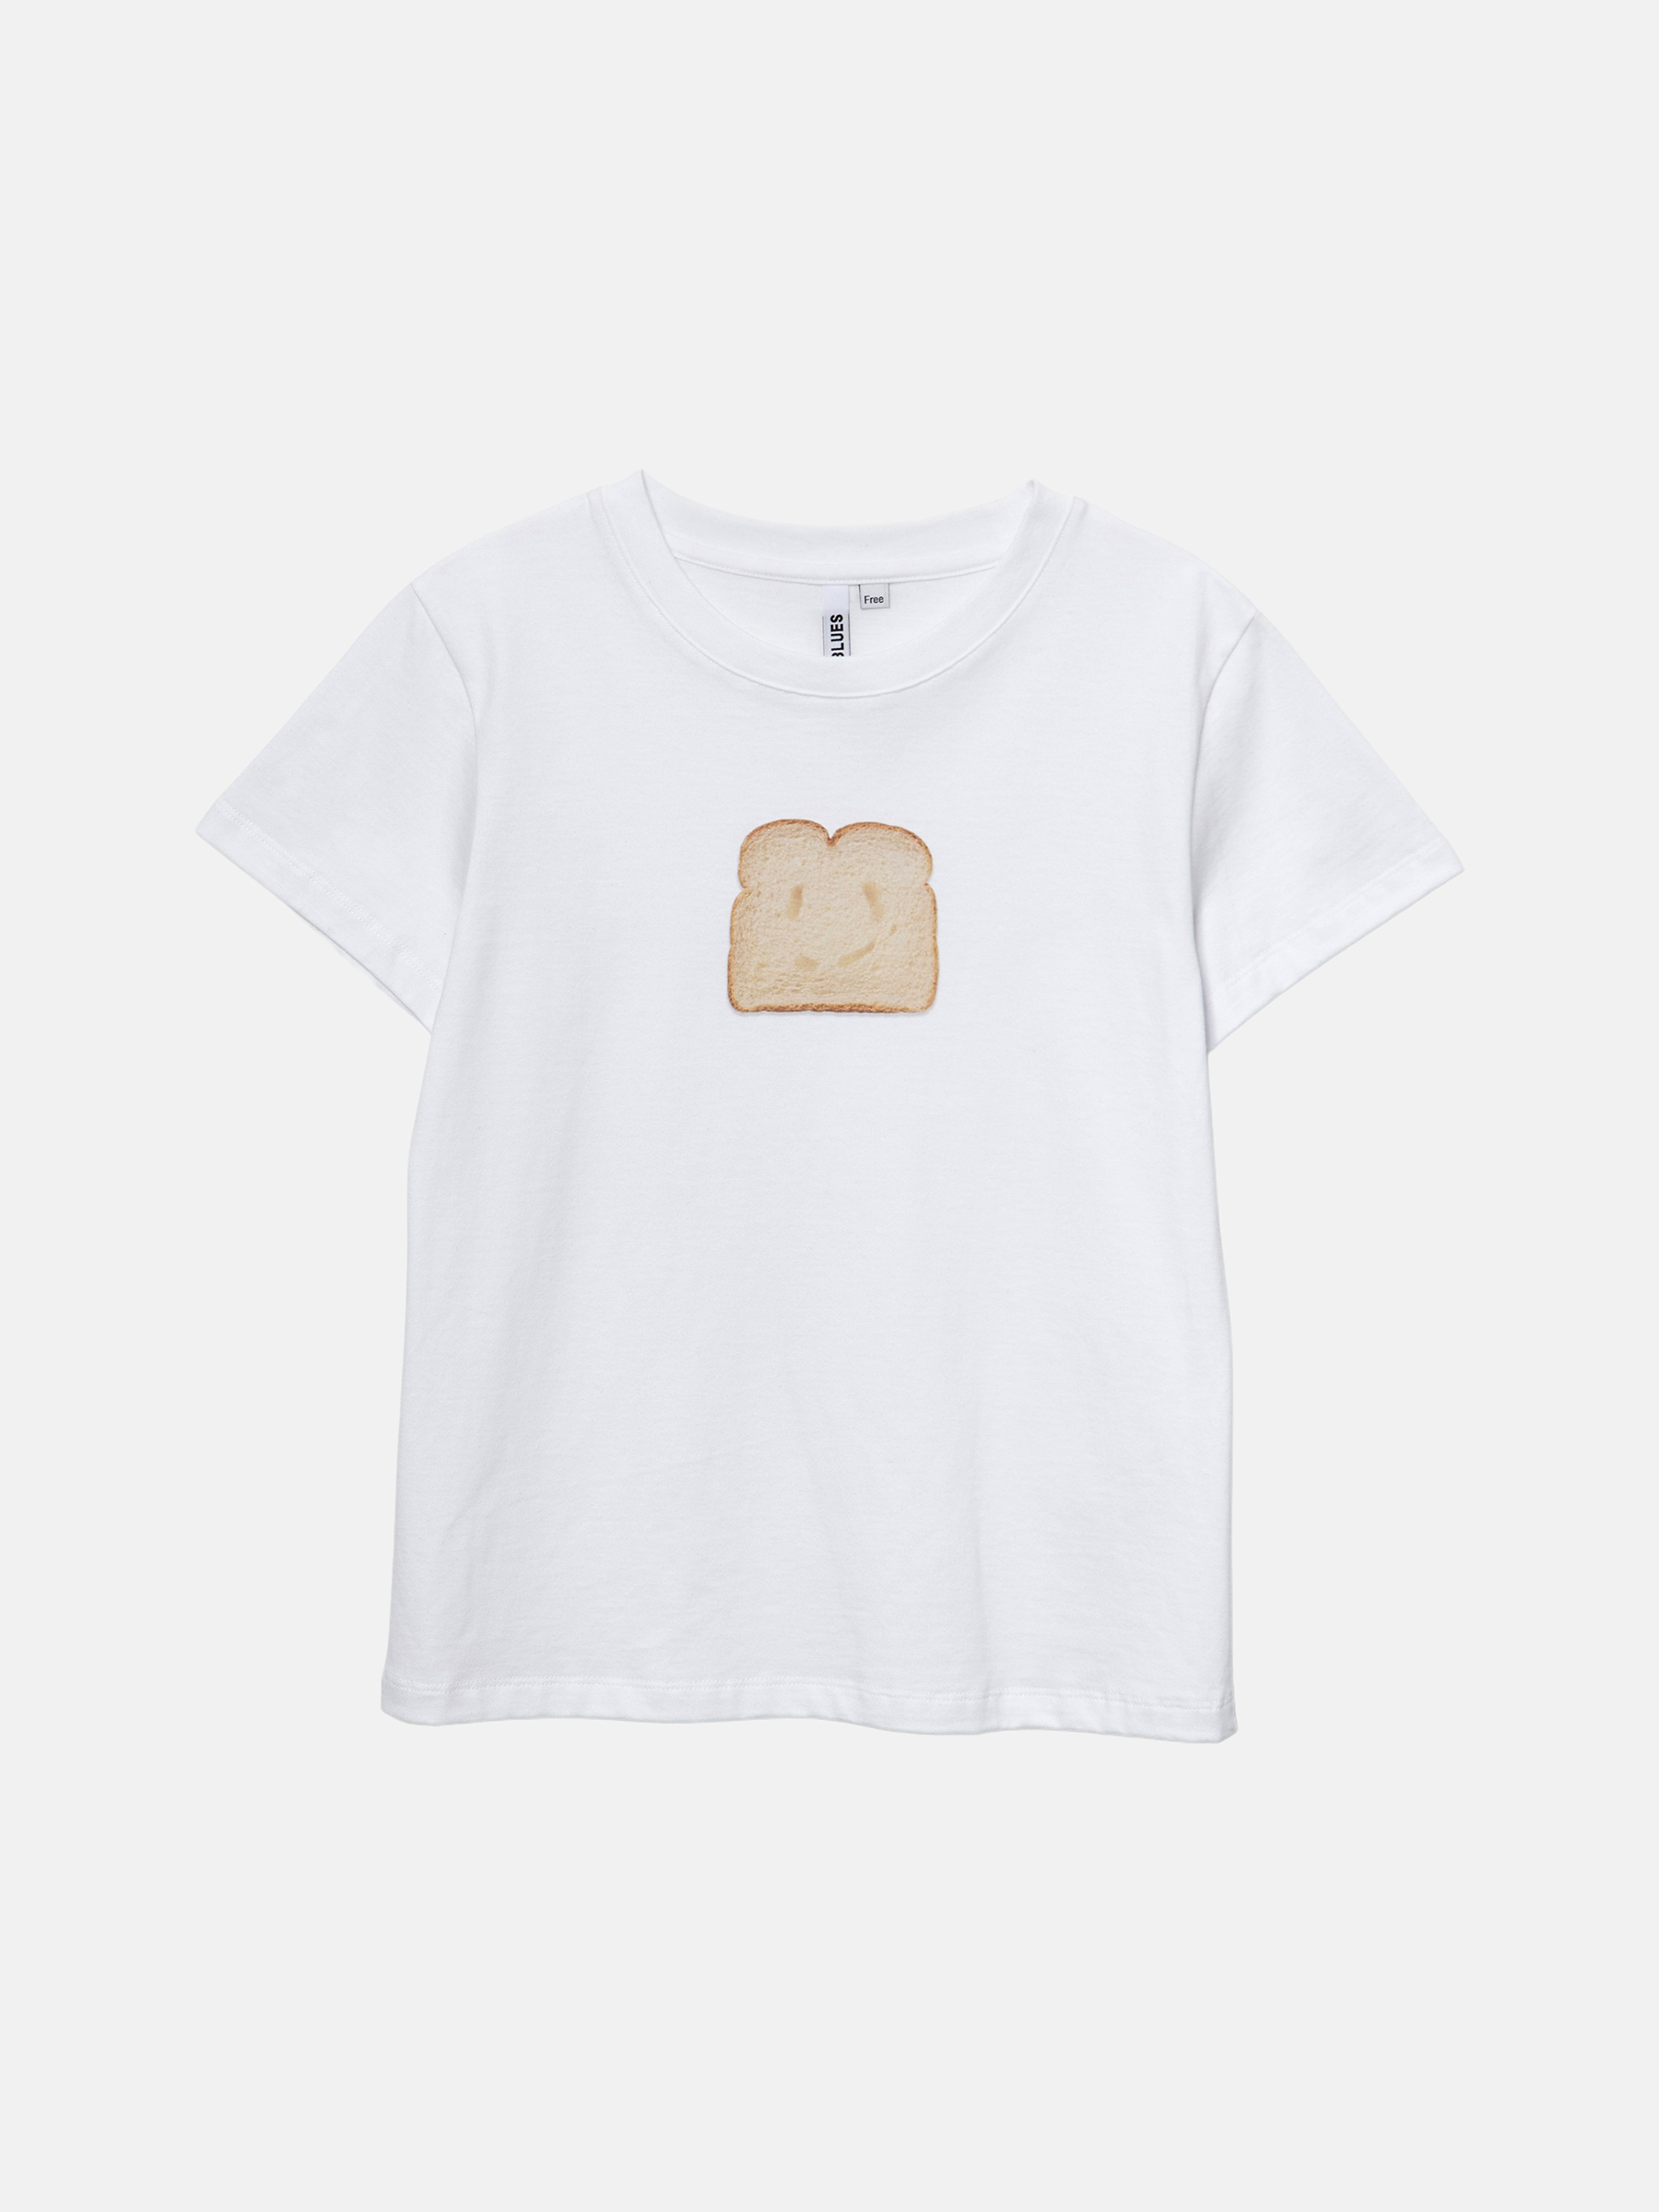 Bread 크롭 티셔츠 (White)